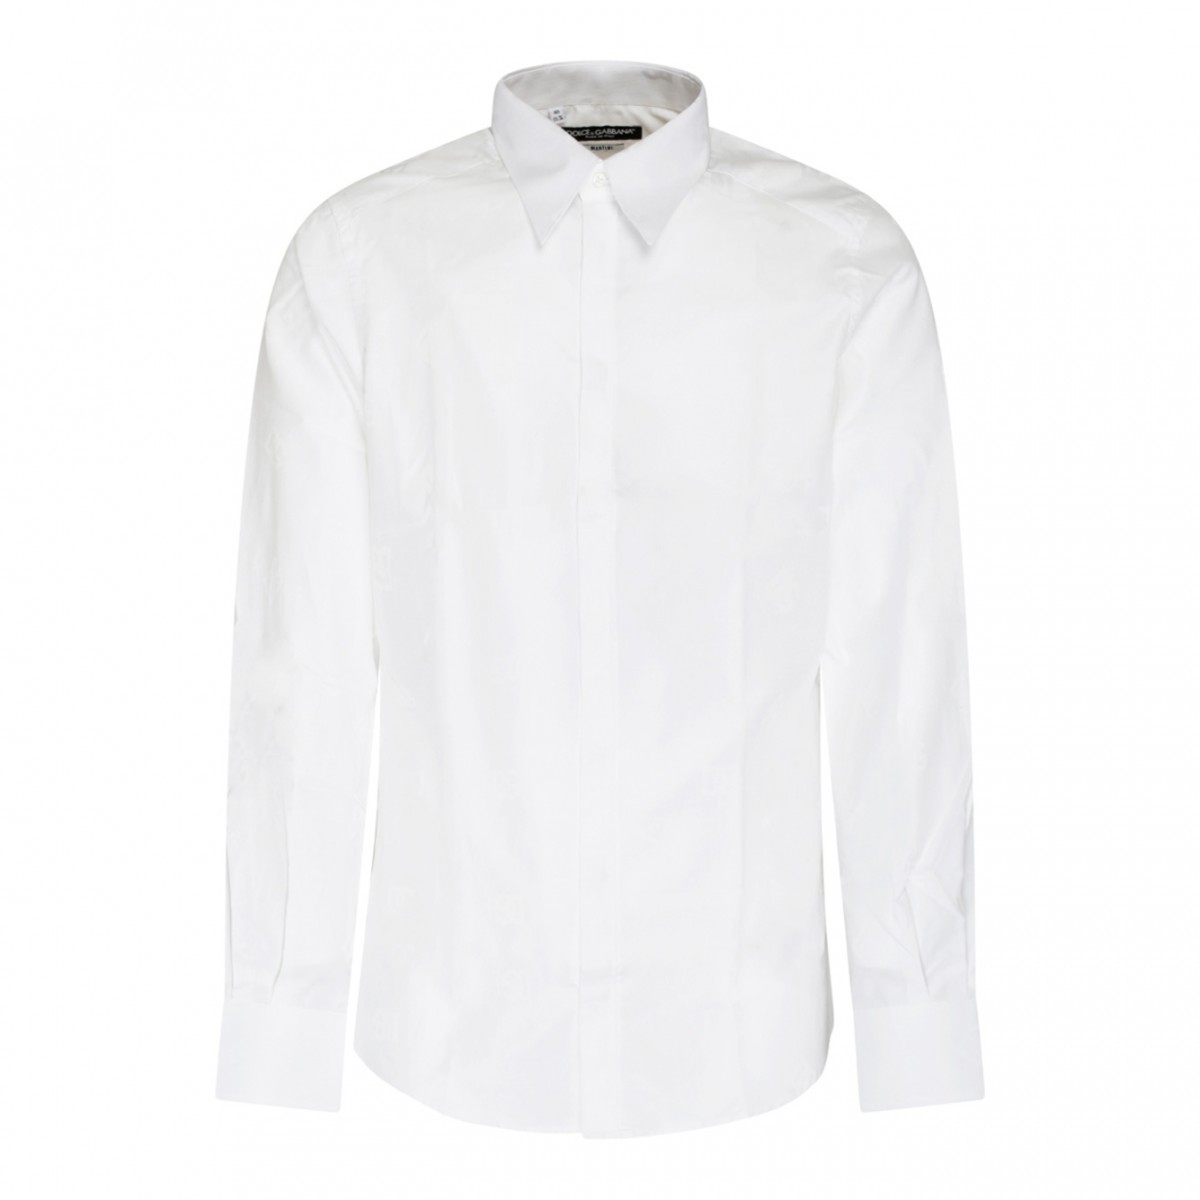 Dolce & Gabbana White Cotton Shirt.